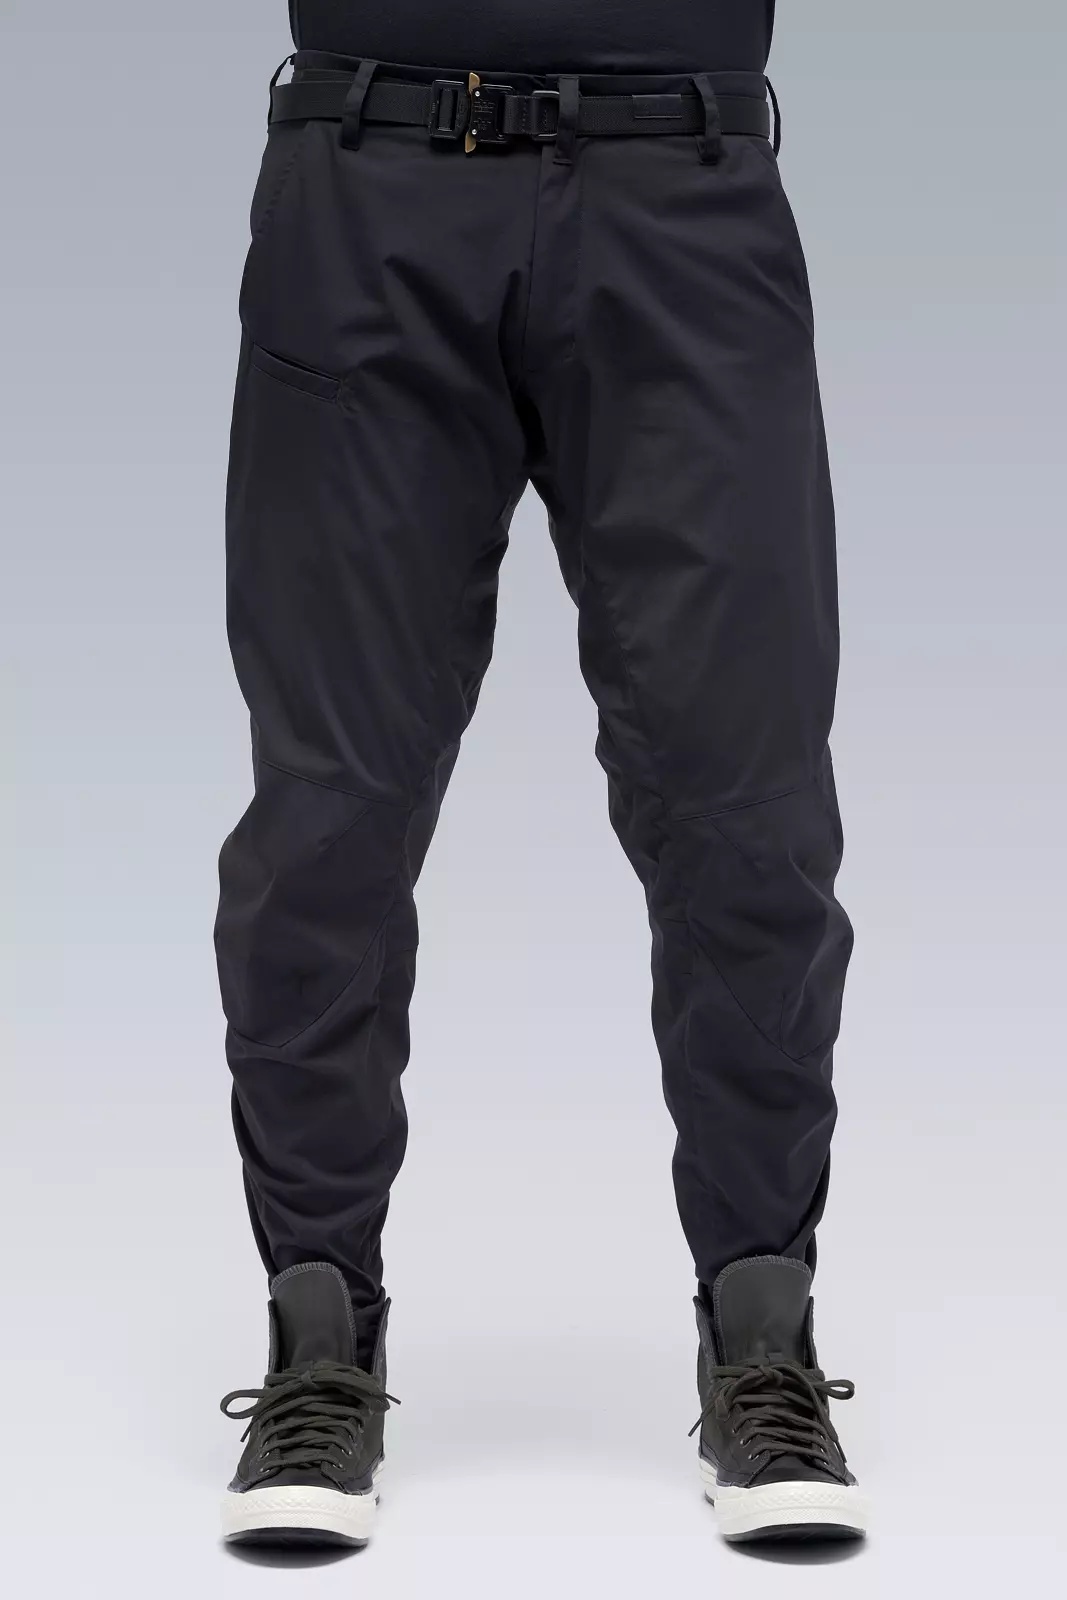 P10-E Encapsulated Nylon  Articulated Pant Black - 2